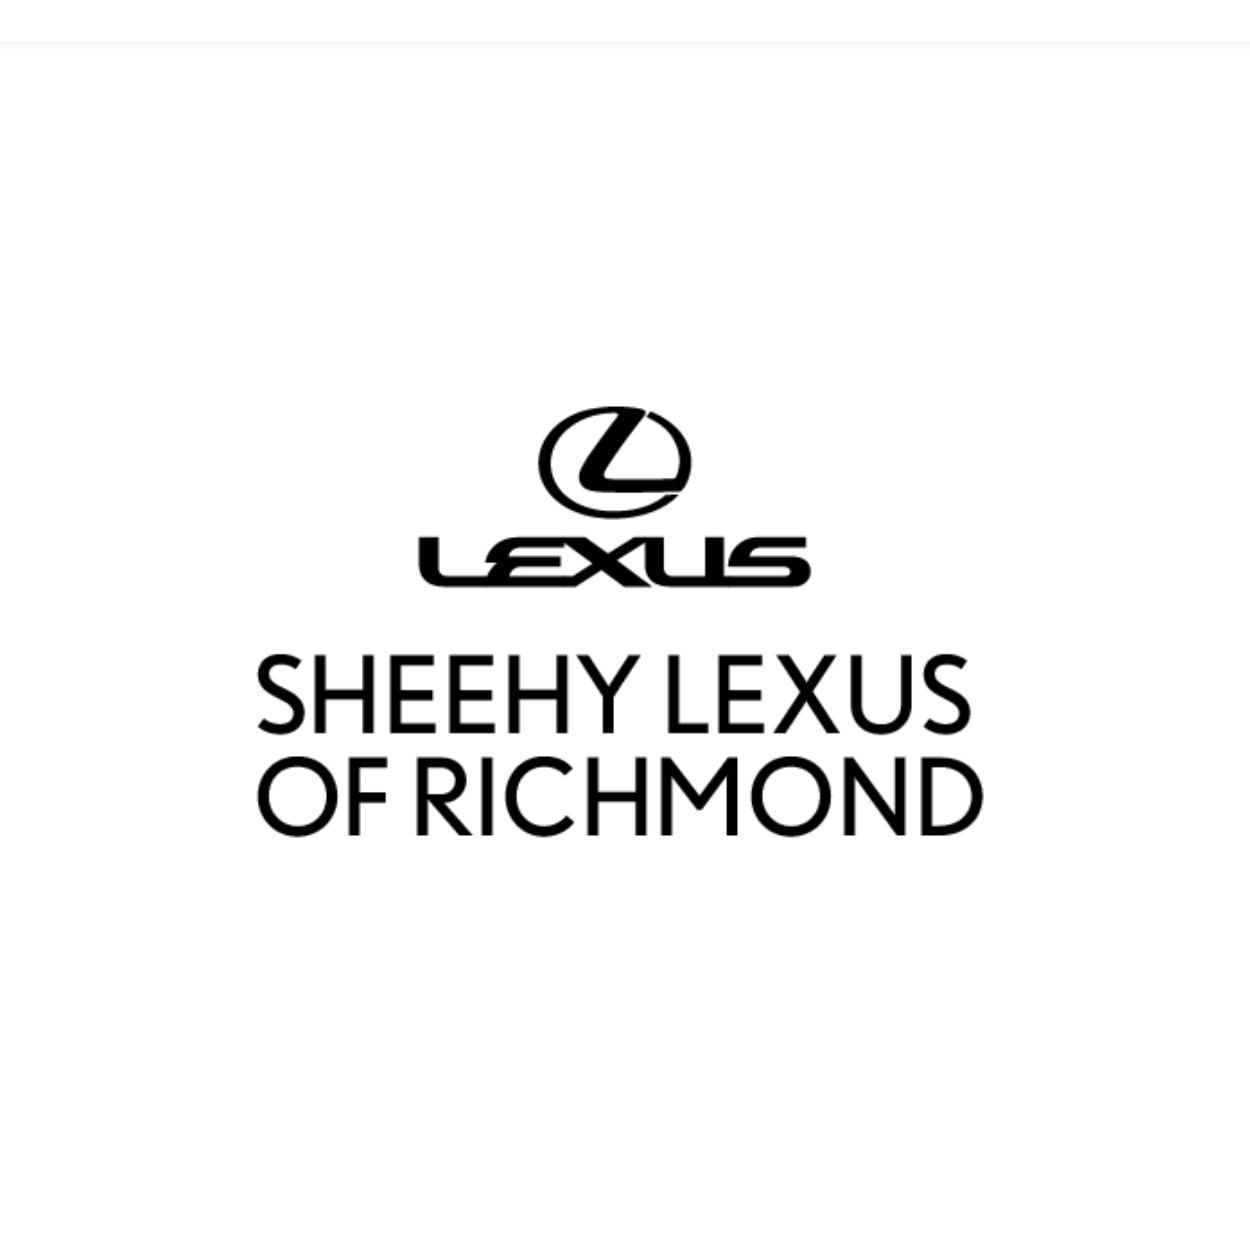 Sheehy Lexus of Richmond